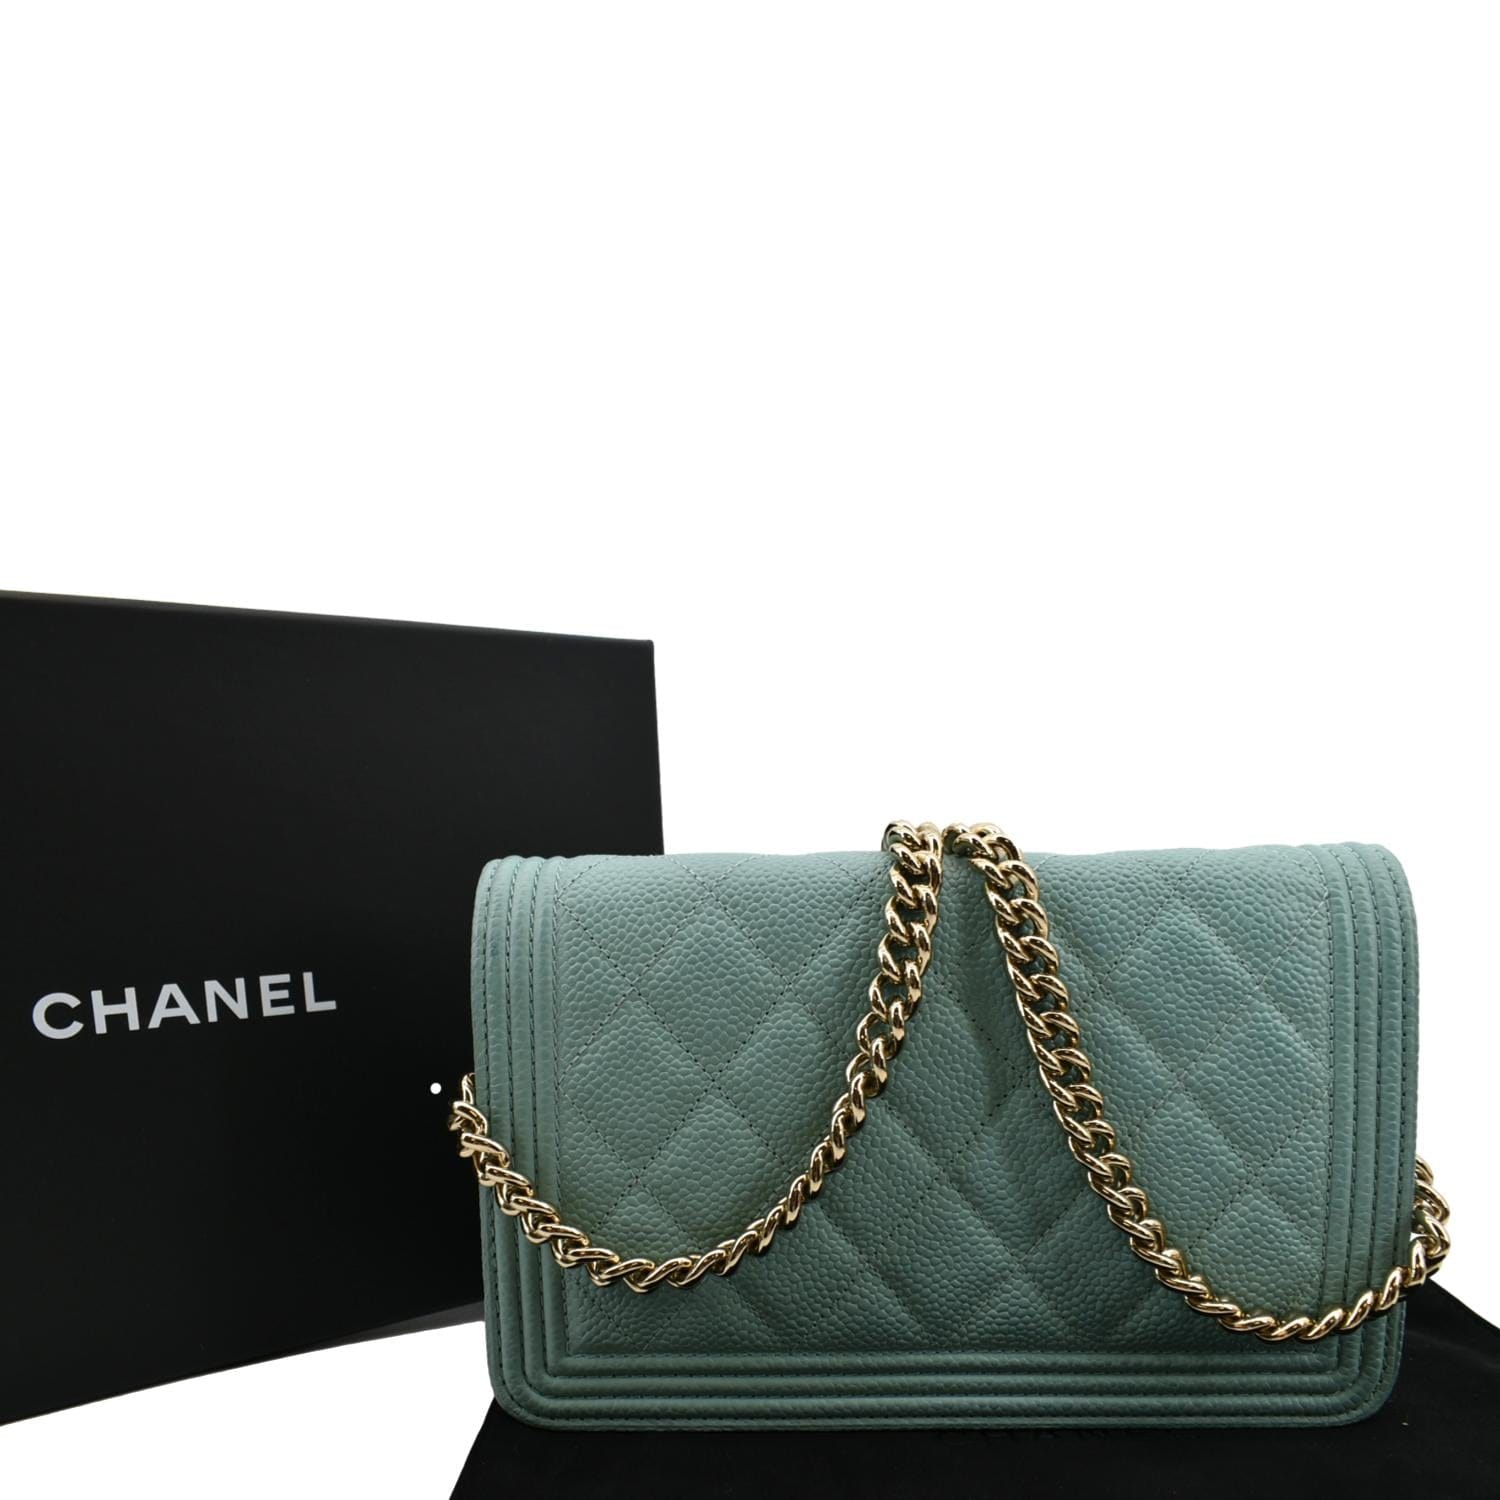 Chanel Boy Woc Caviar Leather Wallet On Clutch Bag